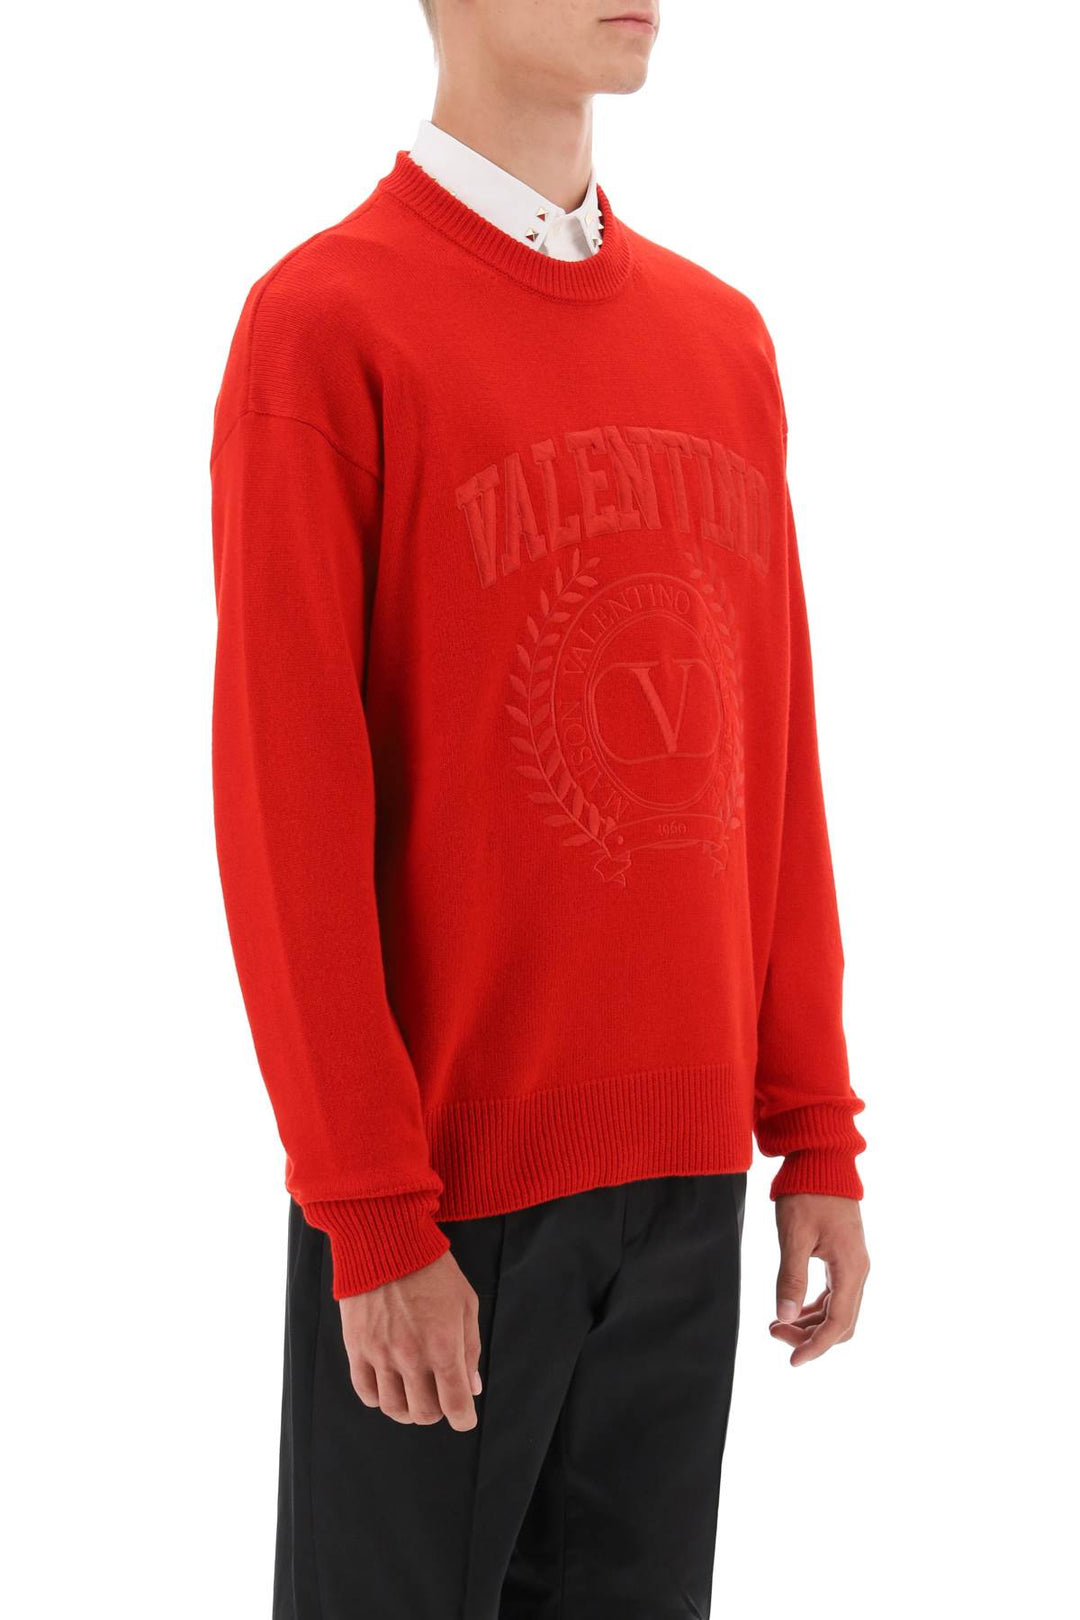 Valentino Garavani Crew Neck Sweater With Maison Valentino Embroidery   Rosso